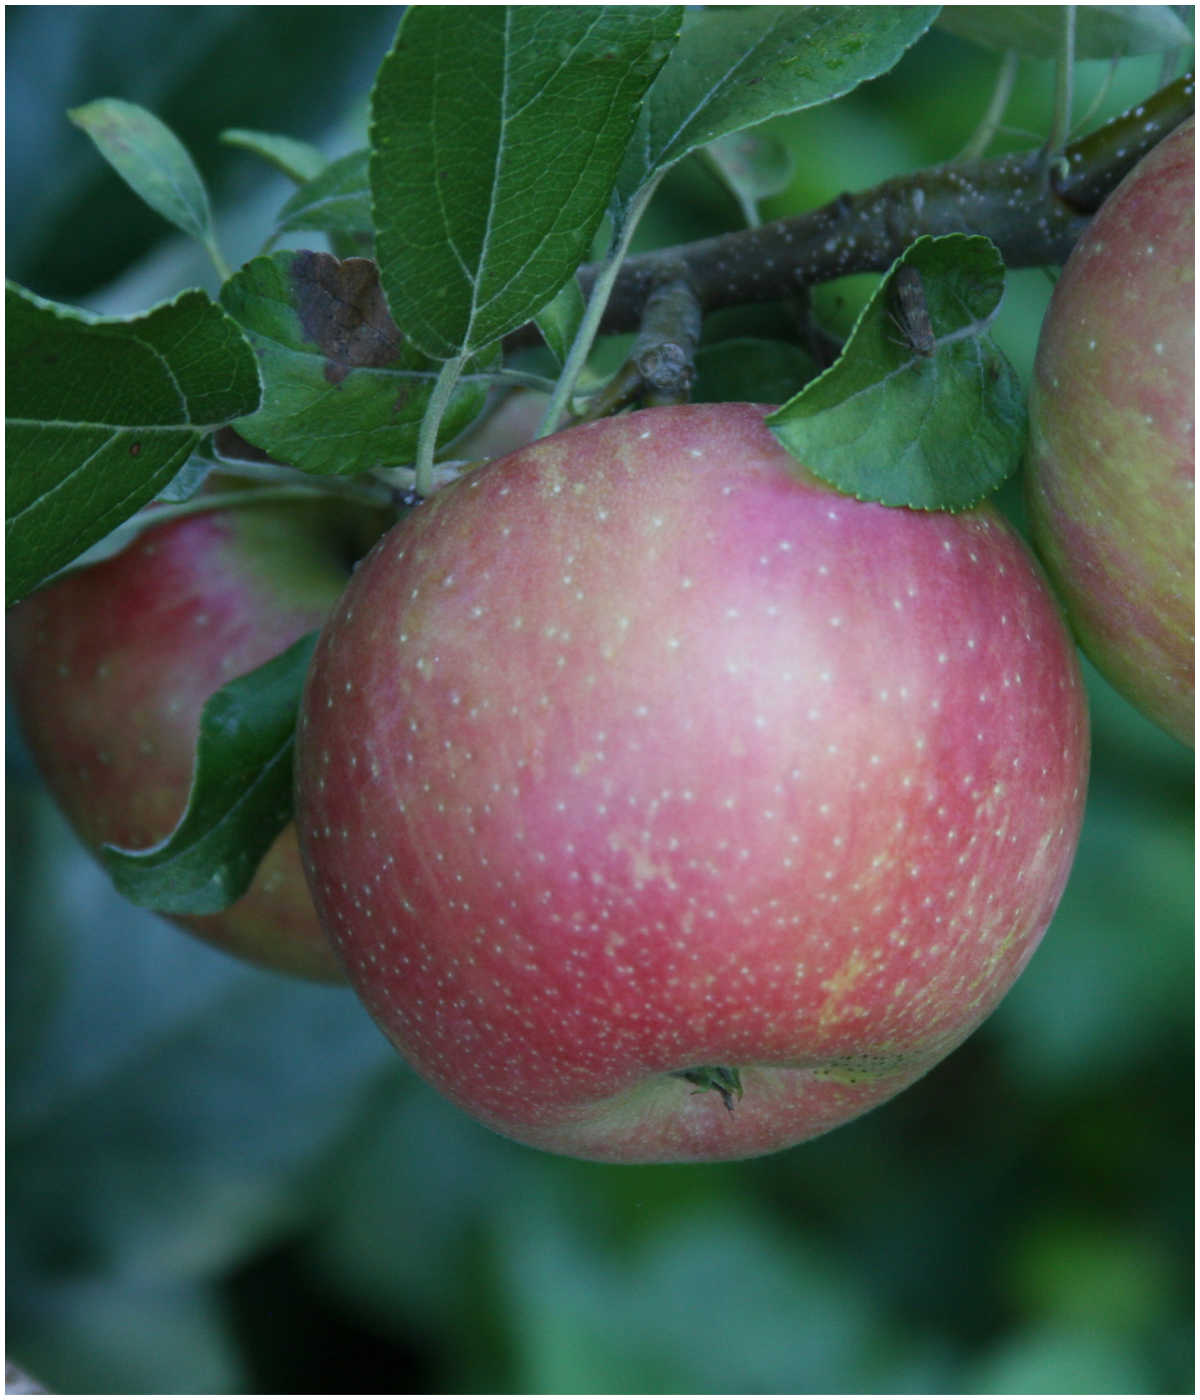 Apple on apple tree at orchard.